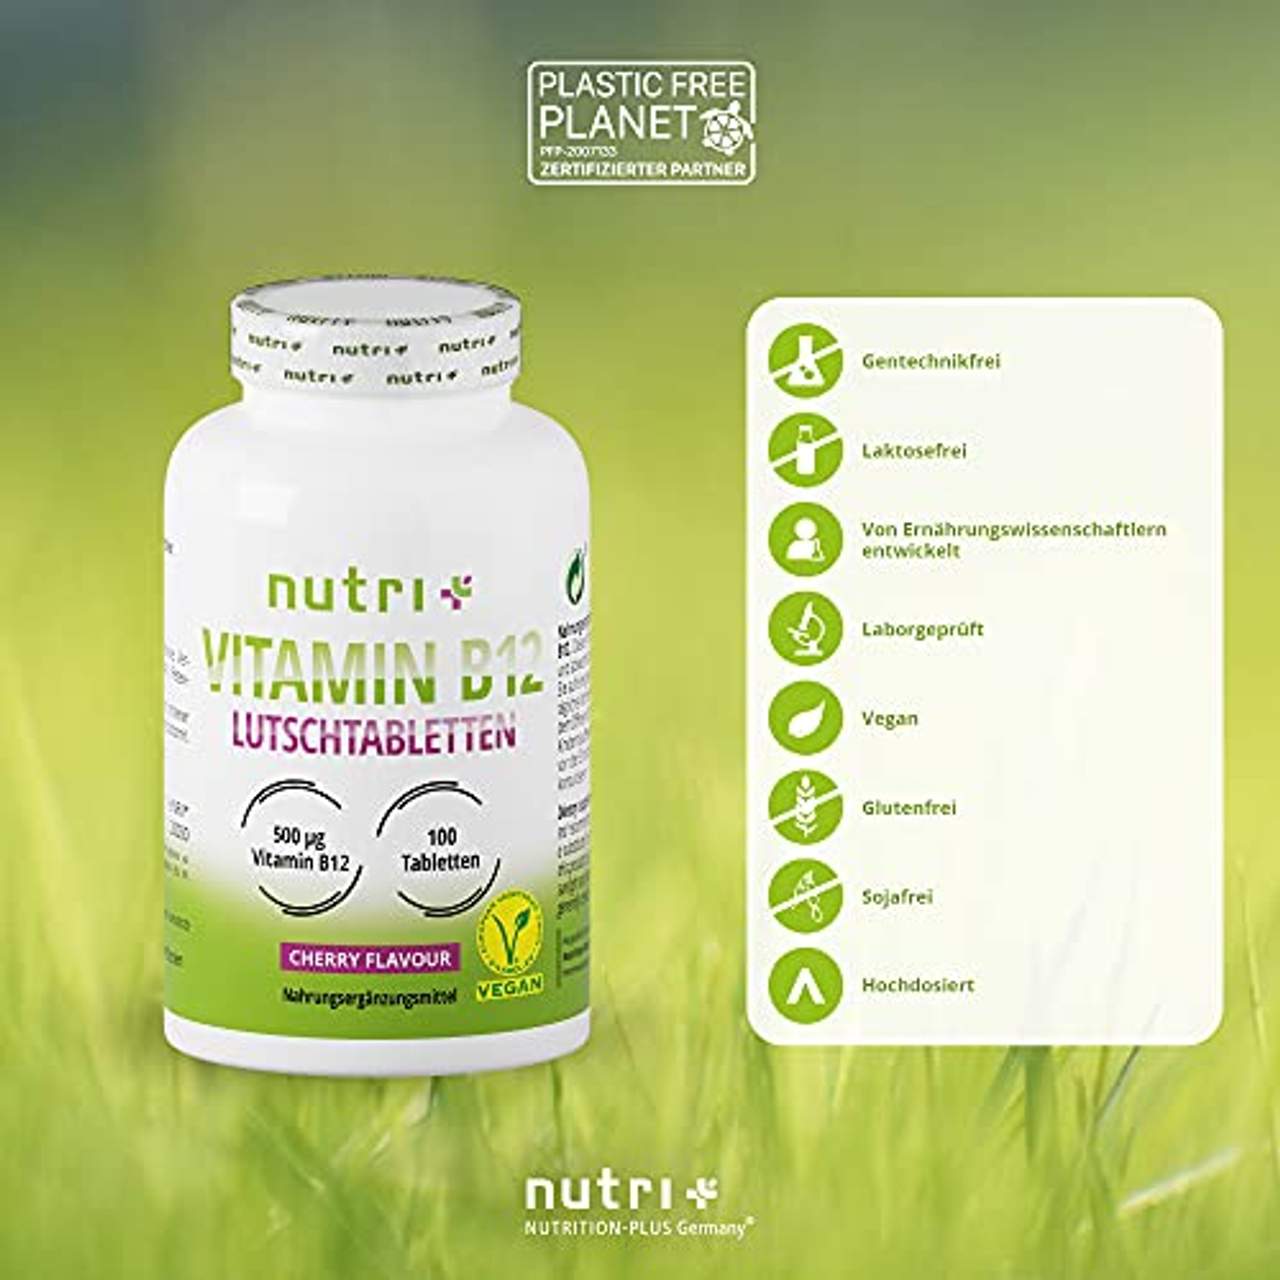 Nutri + Vitamin B12 Lutschtabletten